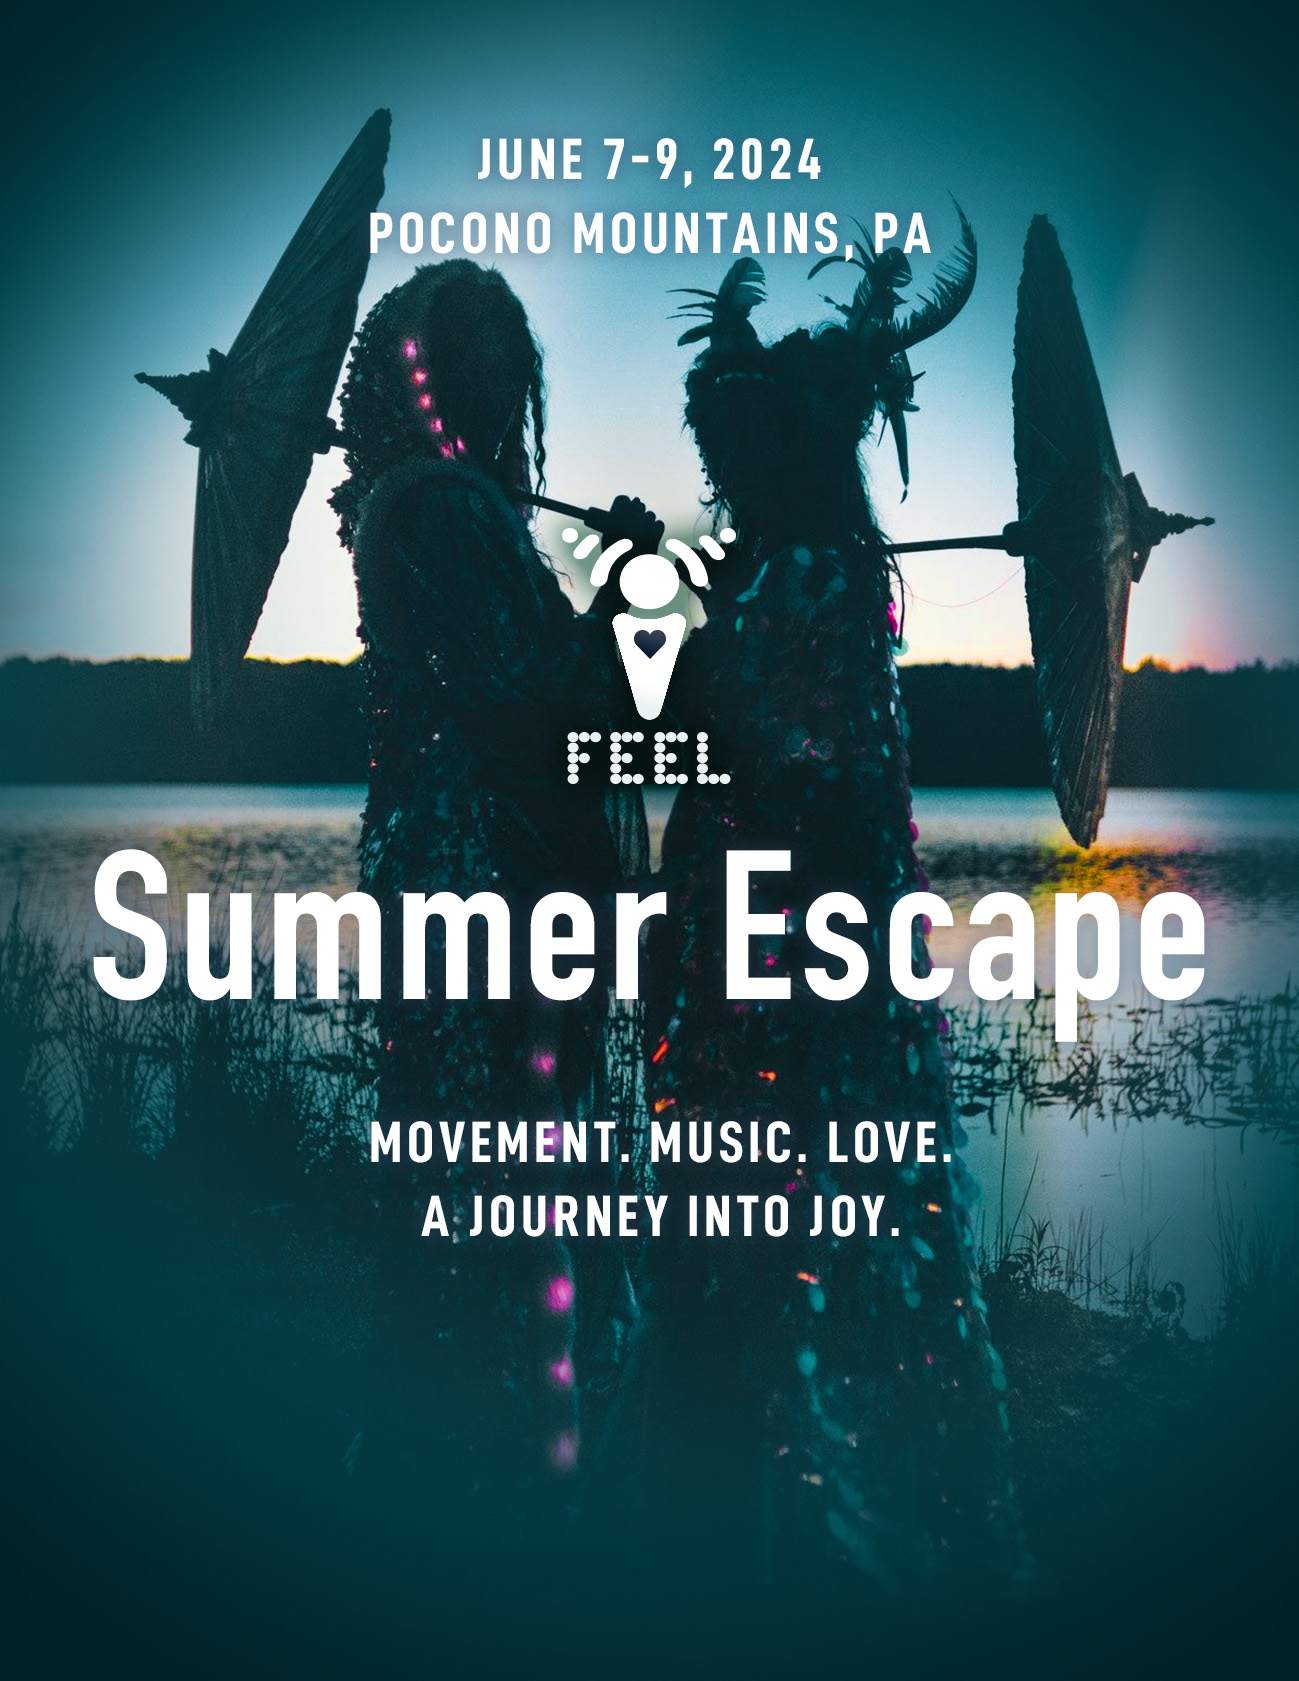 Summer Escape Festival - Página frontal